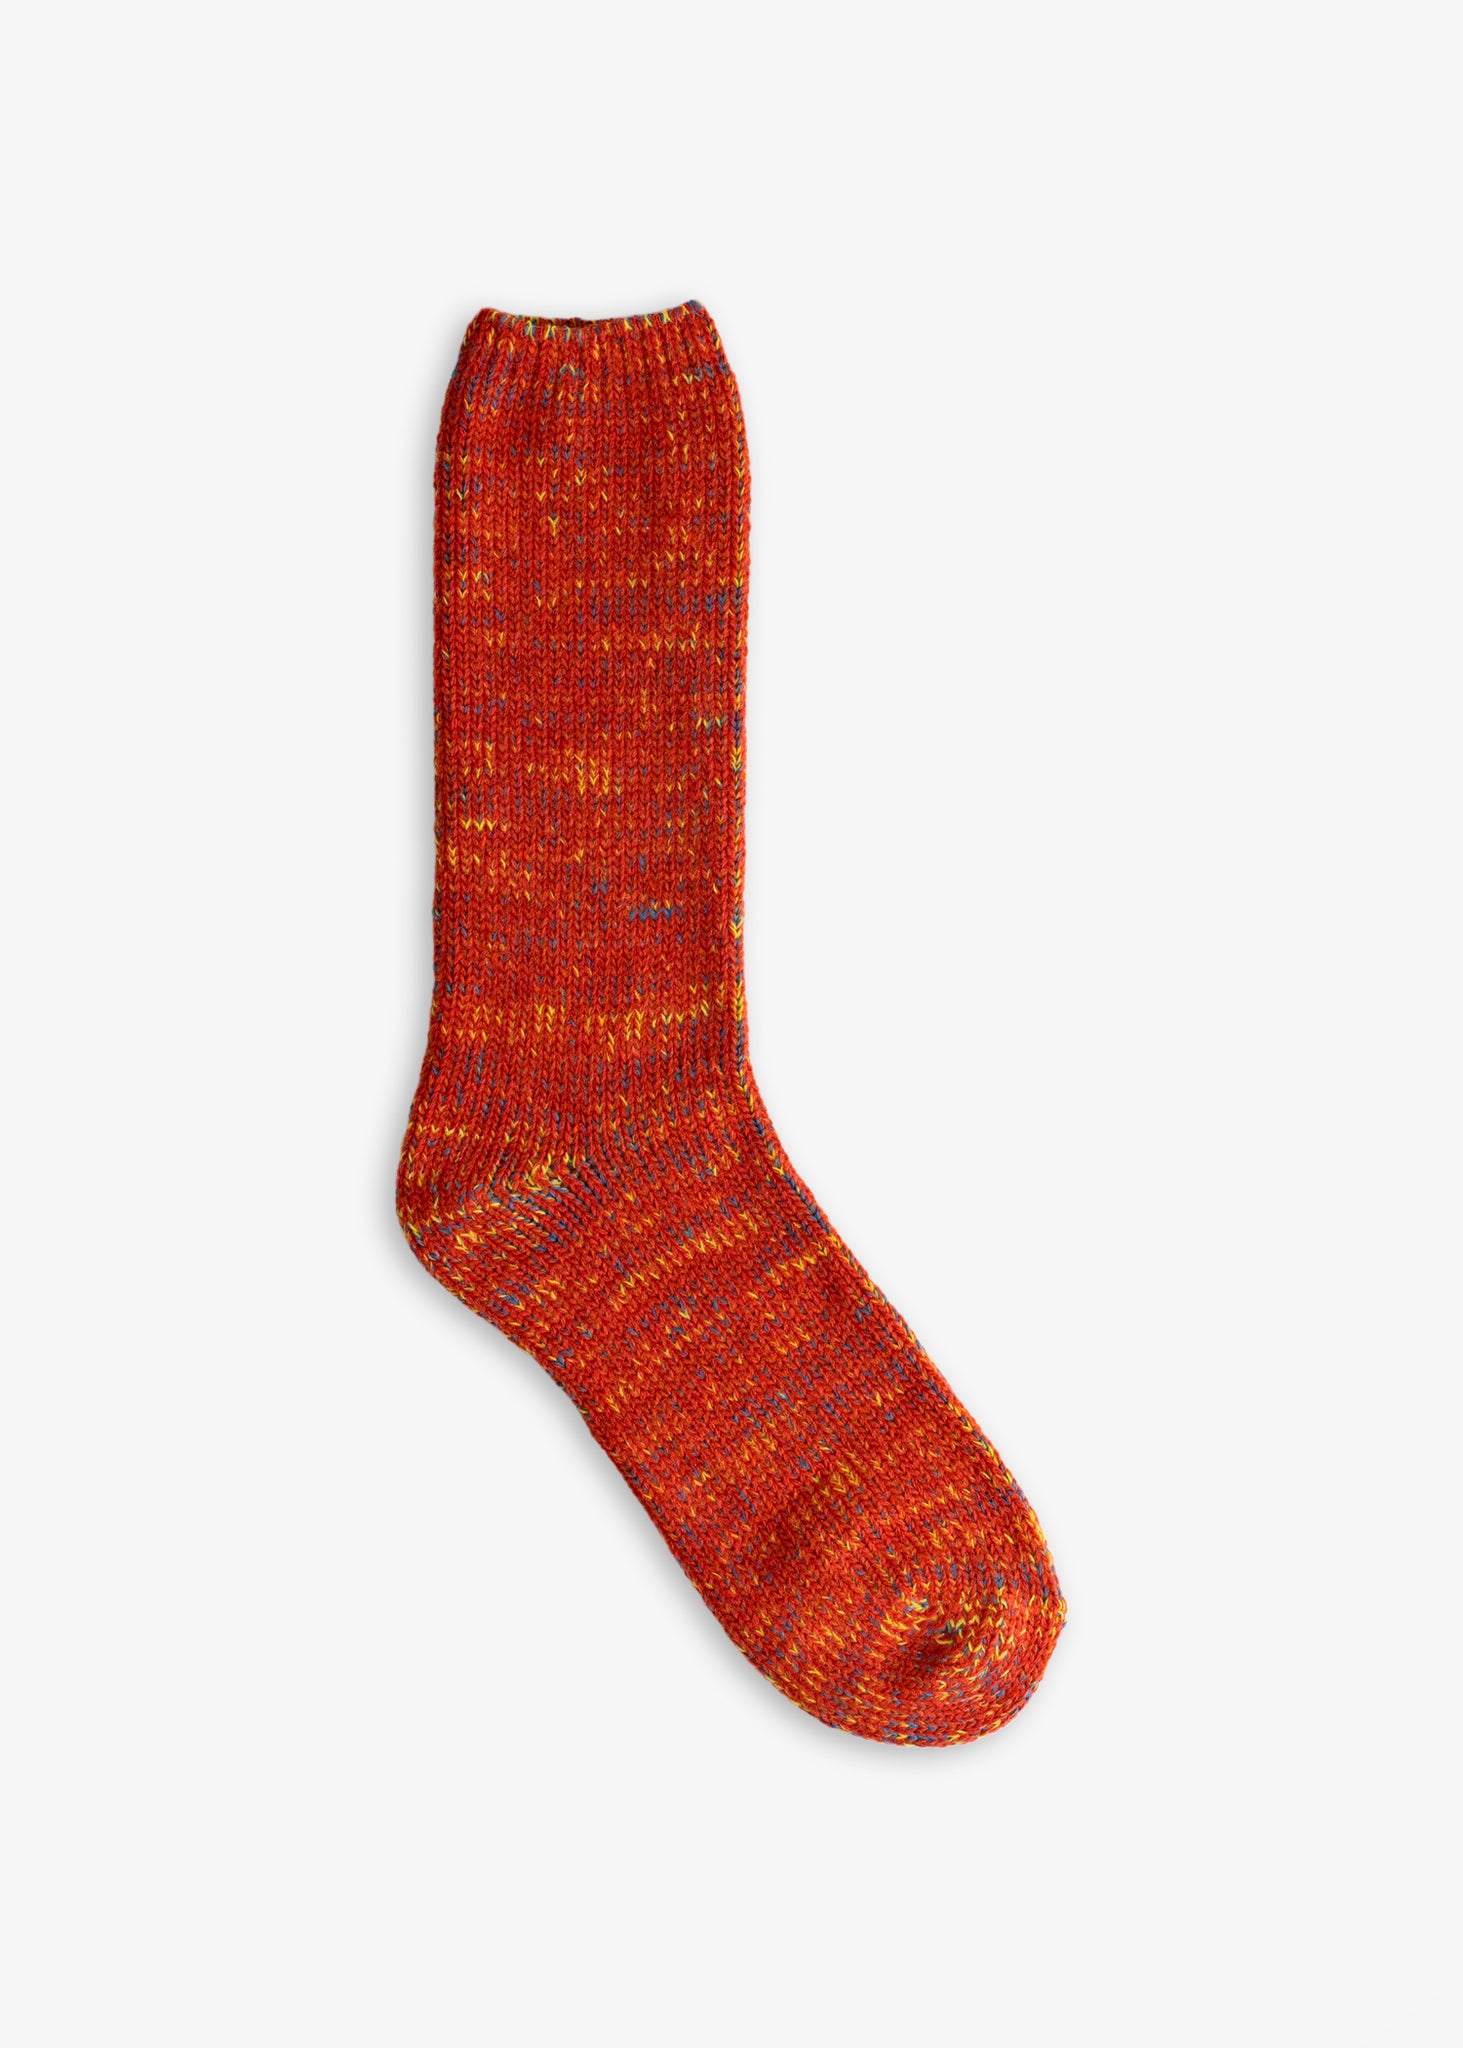 Thunders Love Wool Recycled Vintage Orange Socks